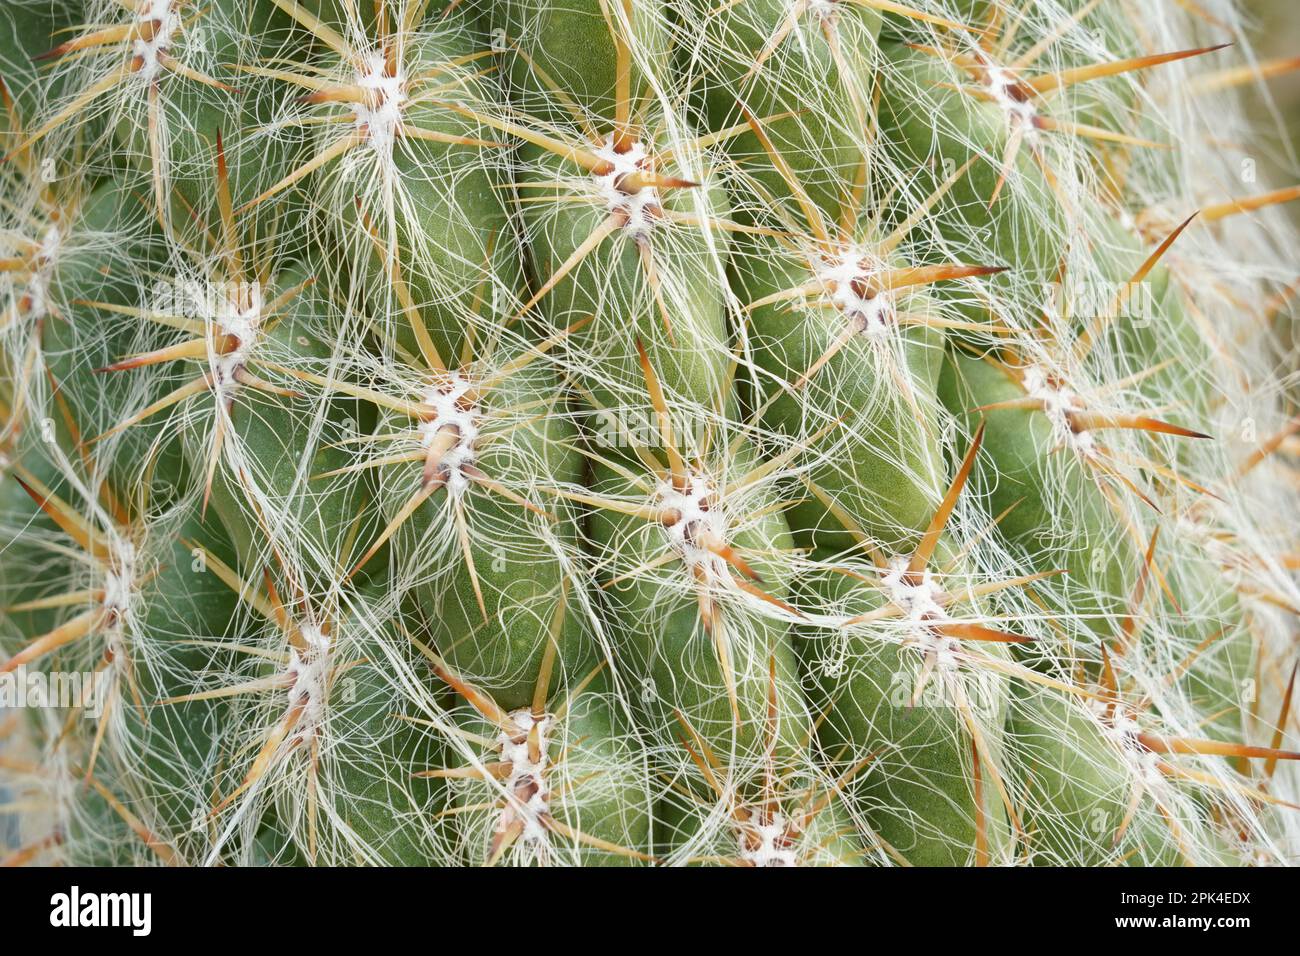 Cactus areoles avec épines gros plan. Il y a des épines pointues épaisses qui poussent de l'aréole et des filaments fins de cheveux blancs qui couvrent la plante. Banque D'Images